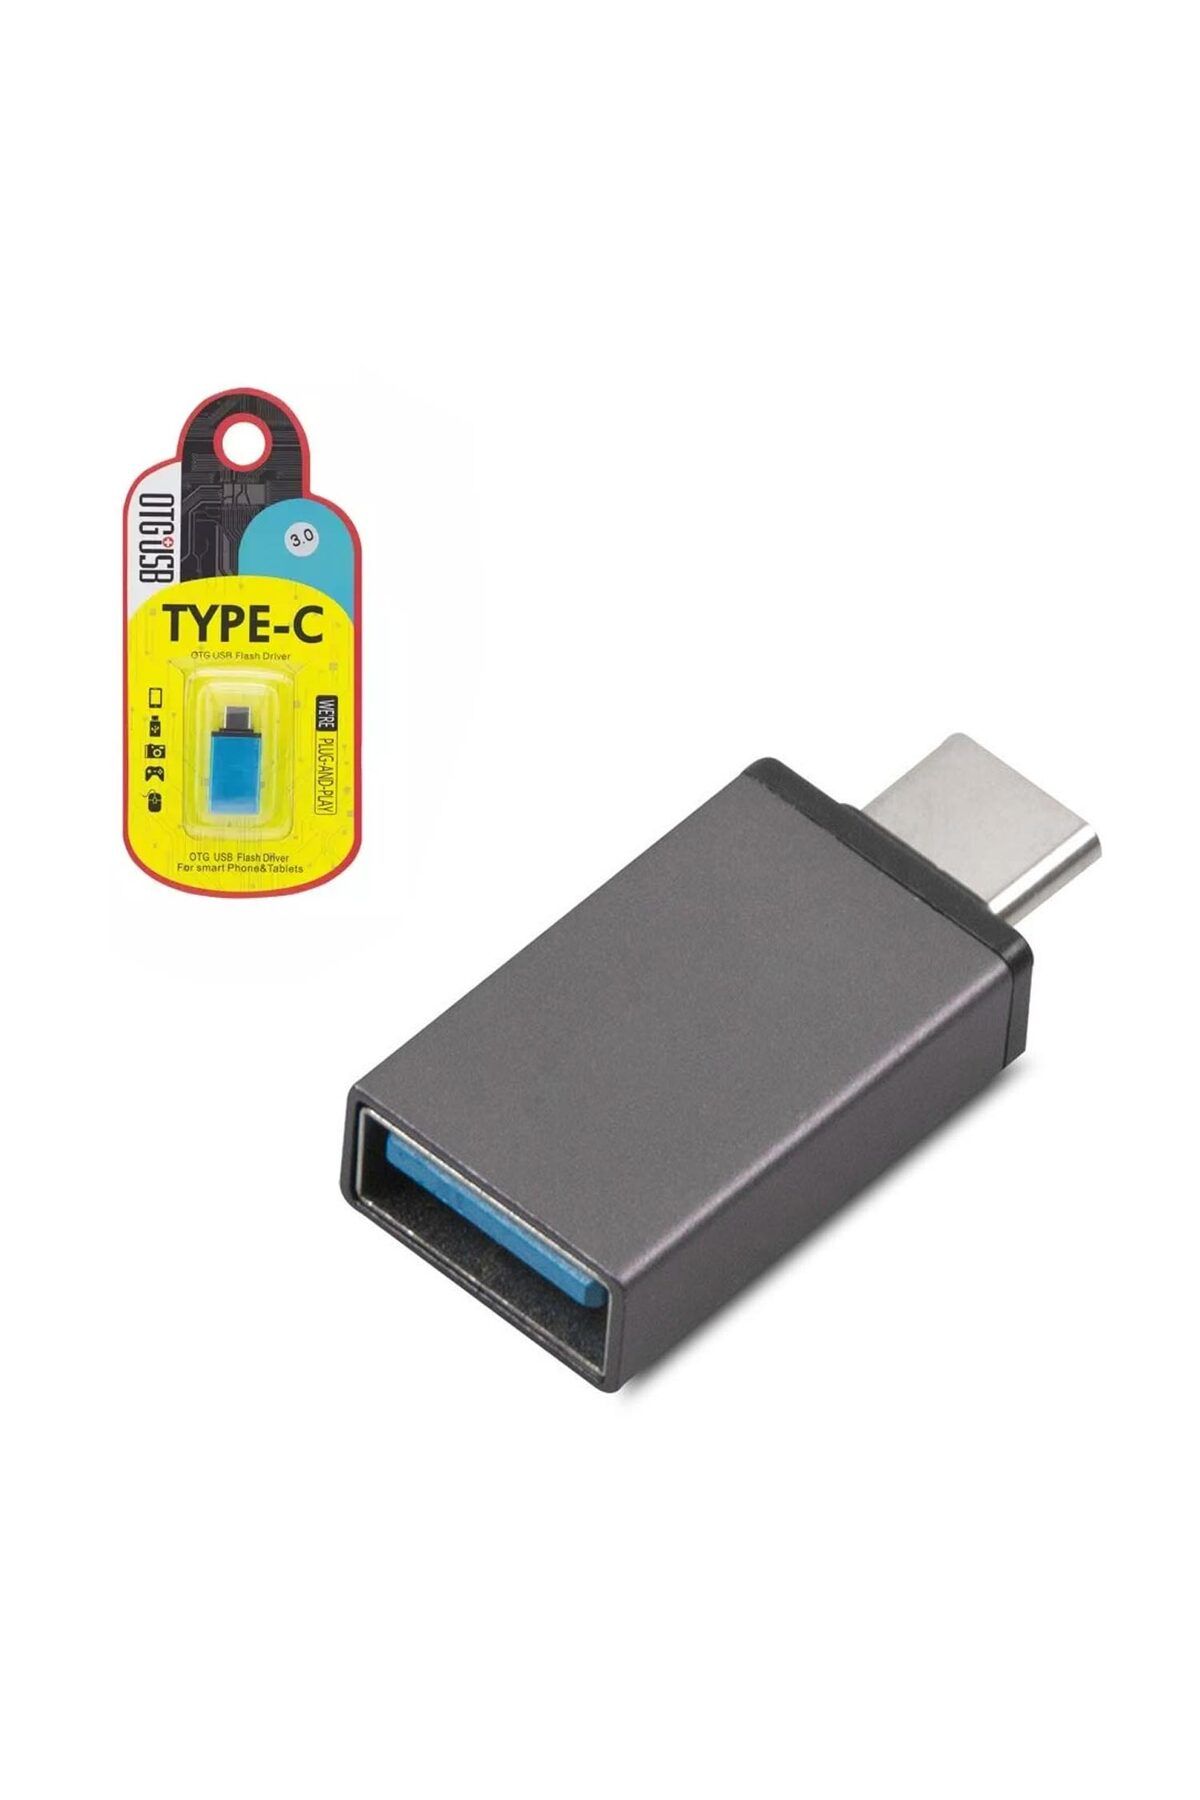 HADRON OTG TYPE-C TO USB 3.0 ÇEVİRİCİ HADRON HDX-5050